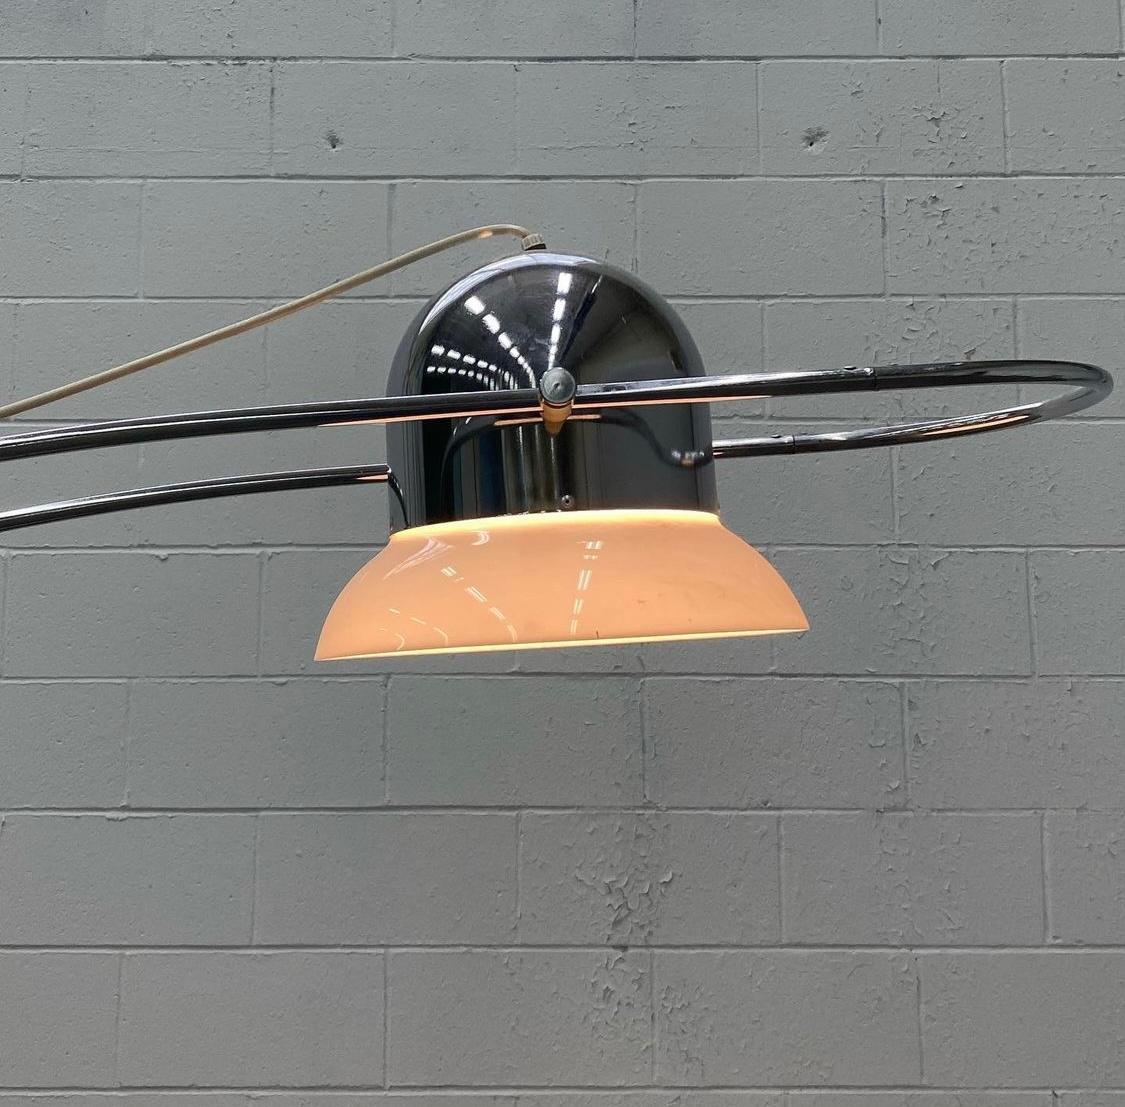 Un article impressionnant fabriqué en Italie par Reggiani vers les années 1960. Il repose sur une base en acier solide et s'étend vers le haut grâce à une quincaillerie chromée solide. Sa tête réglable est idéale pour projeter sa lumière dans un